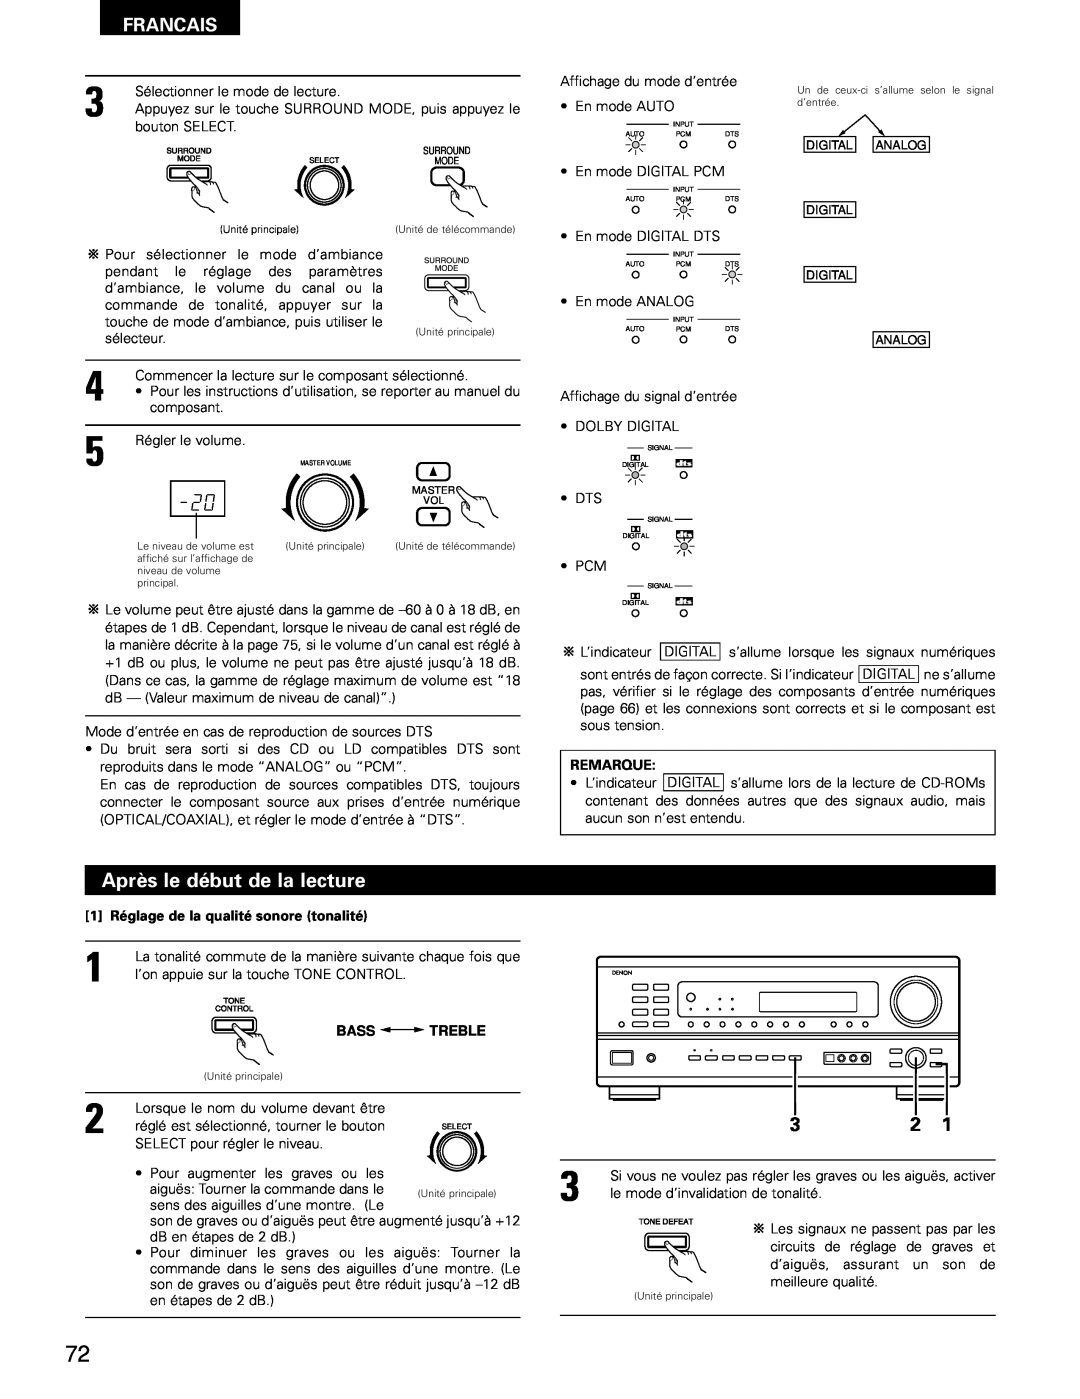 Denon AVR-1802/882 manual Après le début de la lecture, Francais, Remarque, 1 Réglage de la qualité sonore tonalité 